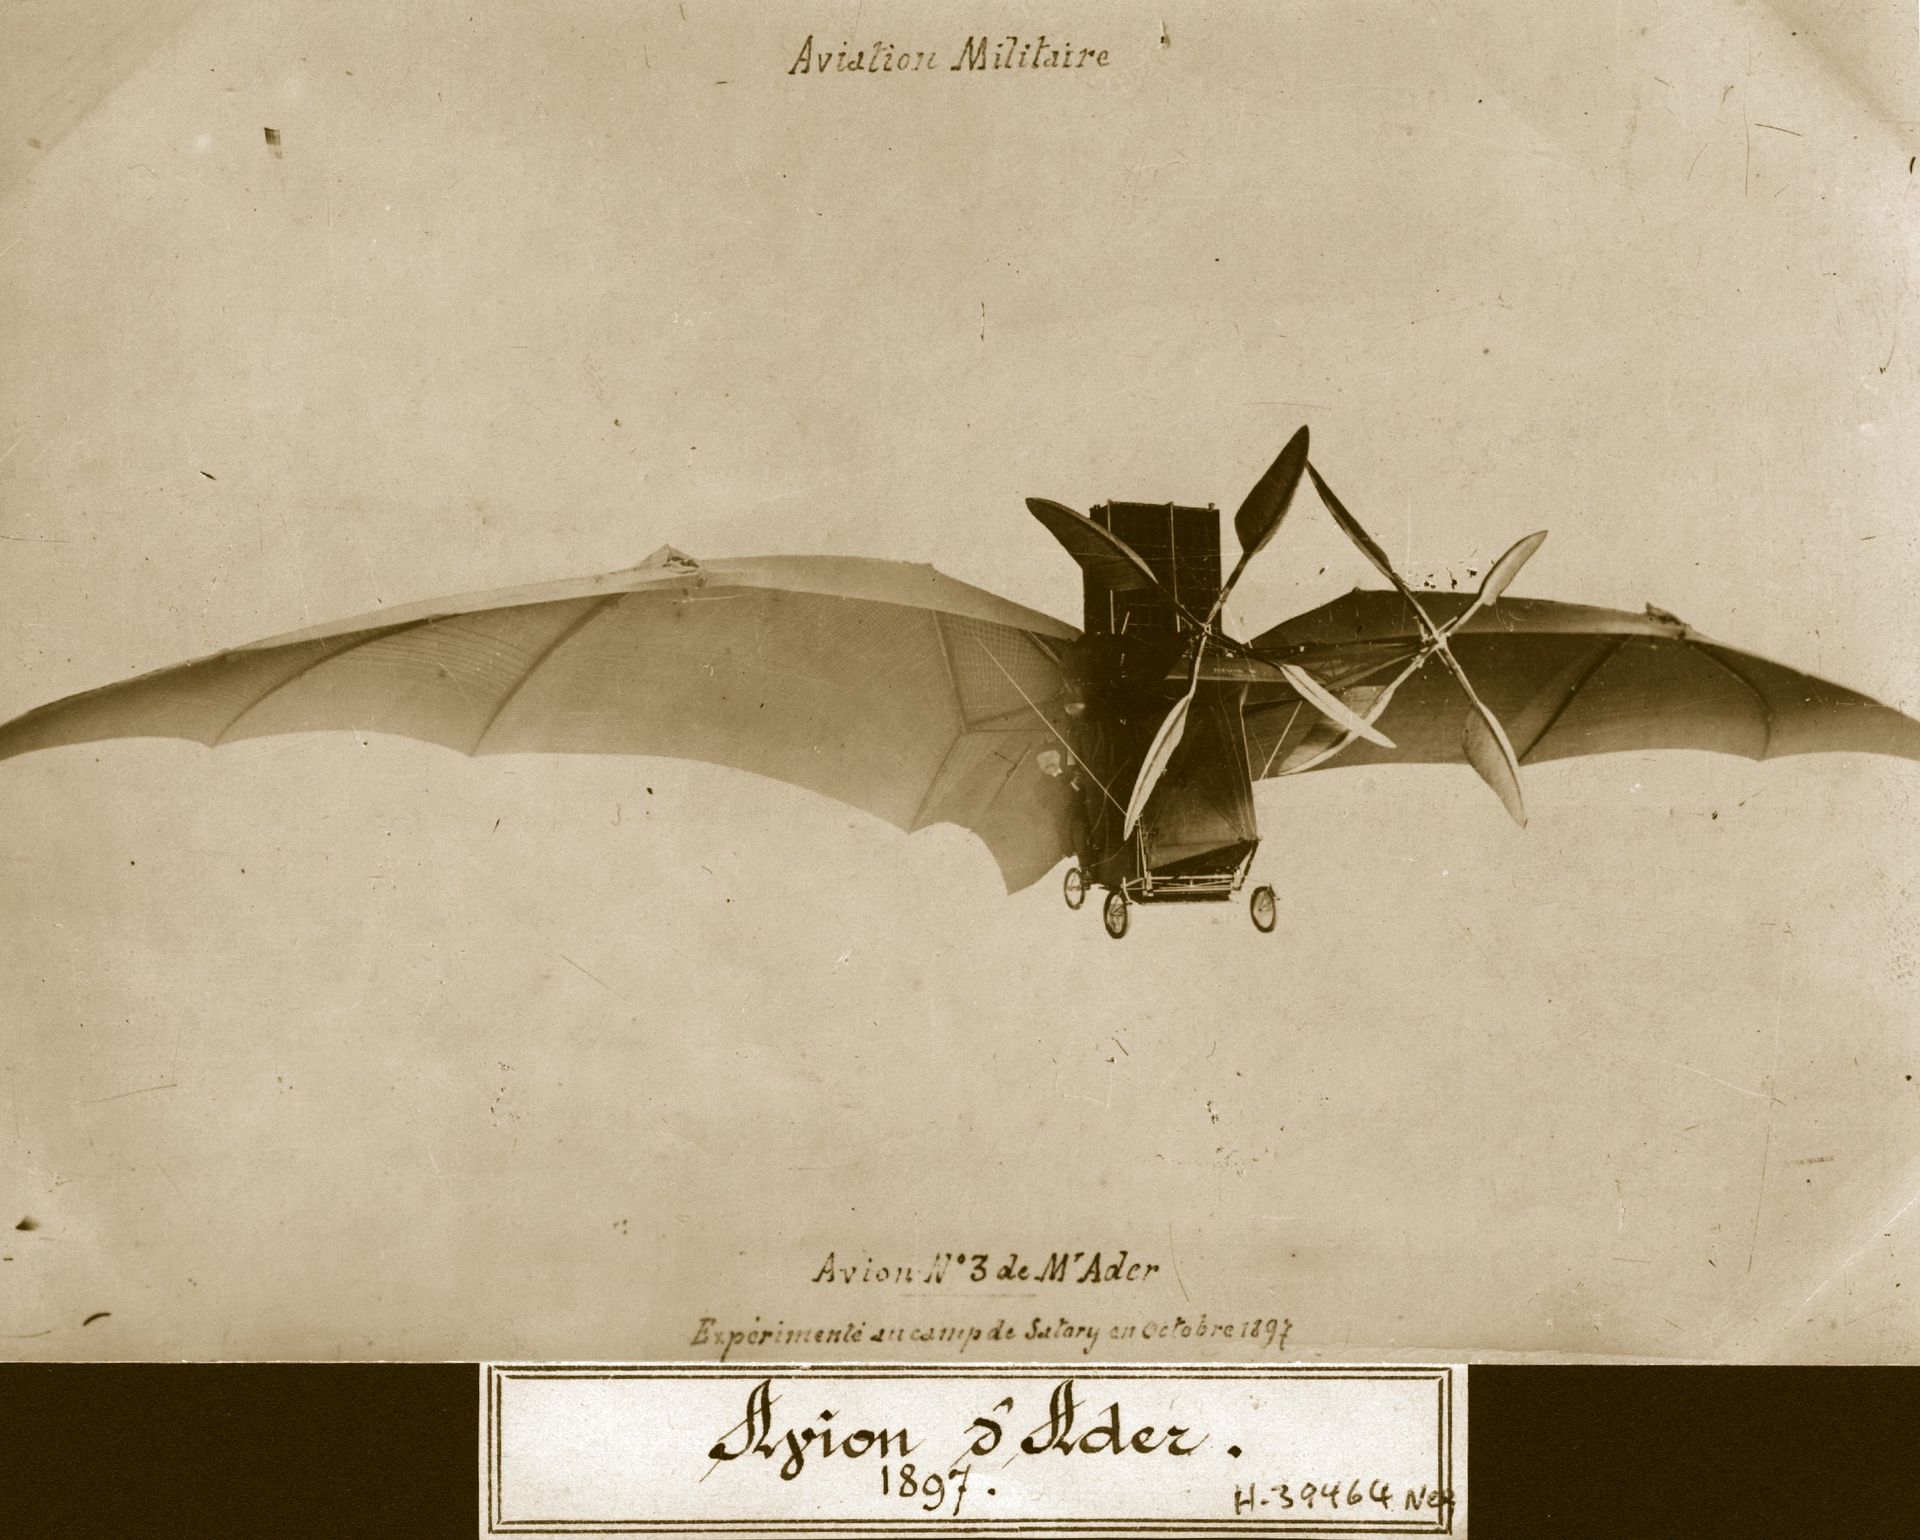 Dans le rétro : il y a 130 ans, Clément Ader ne touchait plus terre avec "Eole", le premier avion de l'histoire